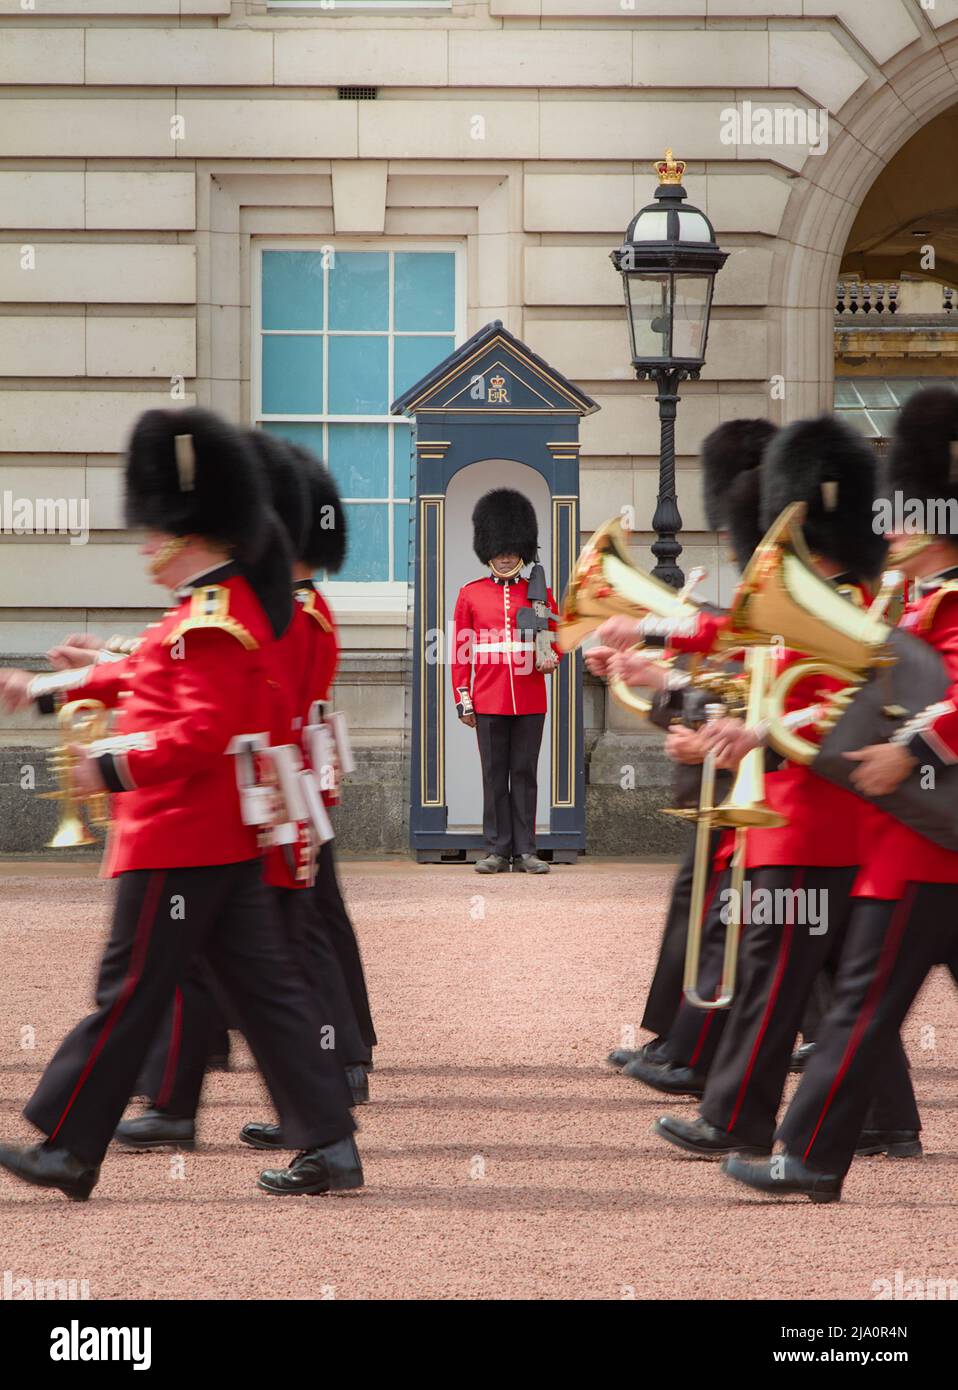 Bande régimentaire ou corps des tambours de la Garde de Queens marchant devant Une nouvelle garde positionnée dans sa boîte à mémoire debout à l'attention, Buckingham Palace Banque D'Images